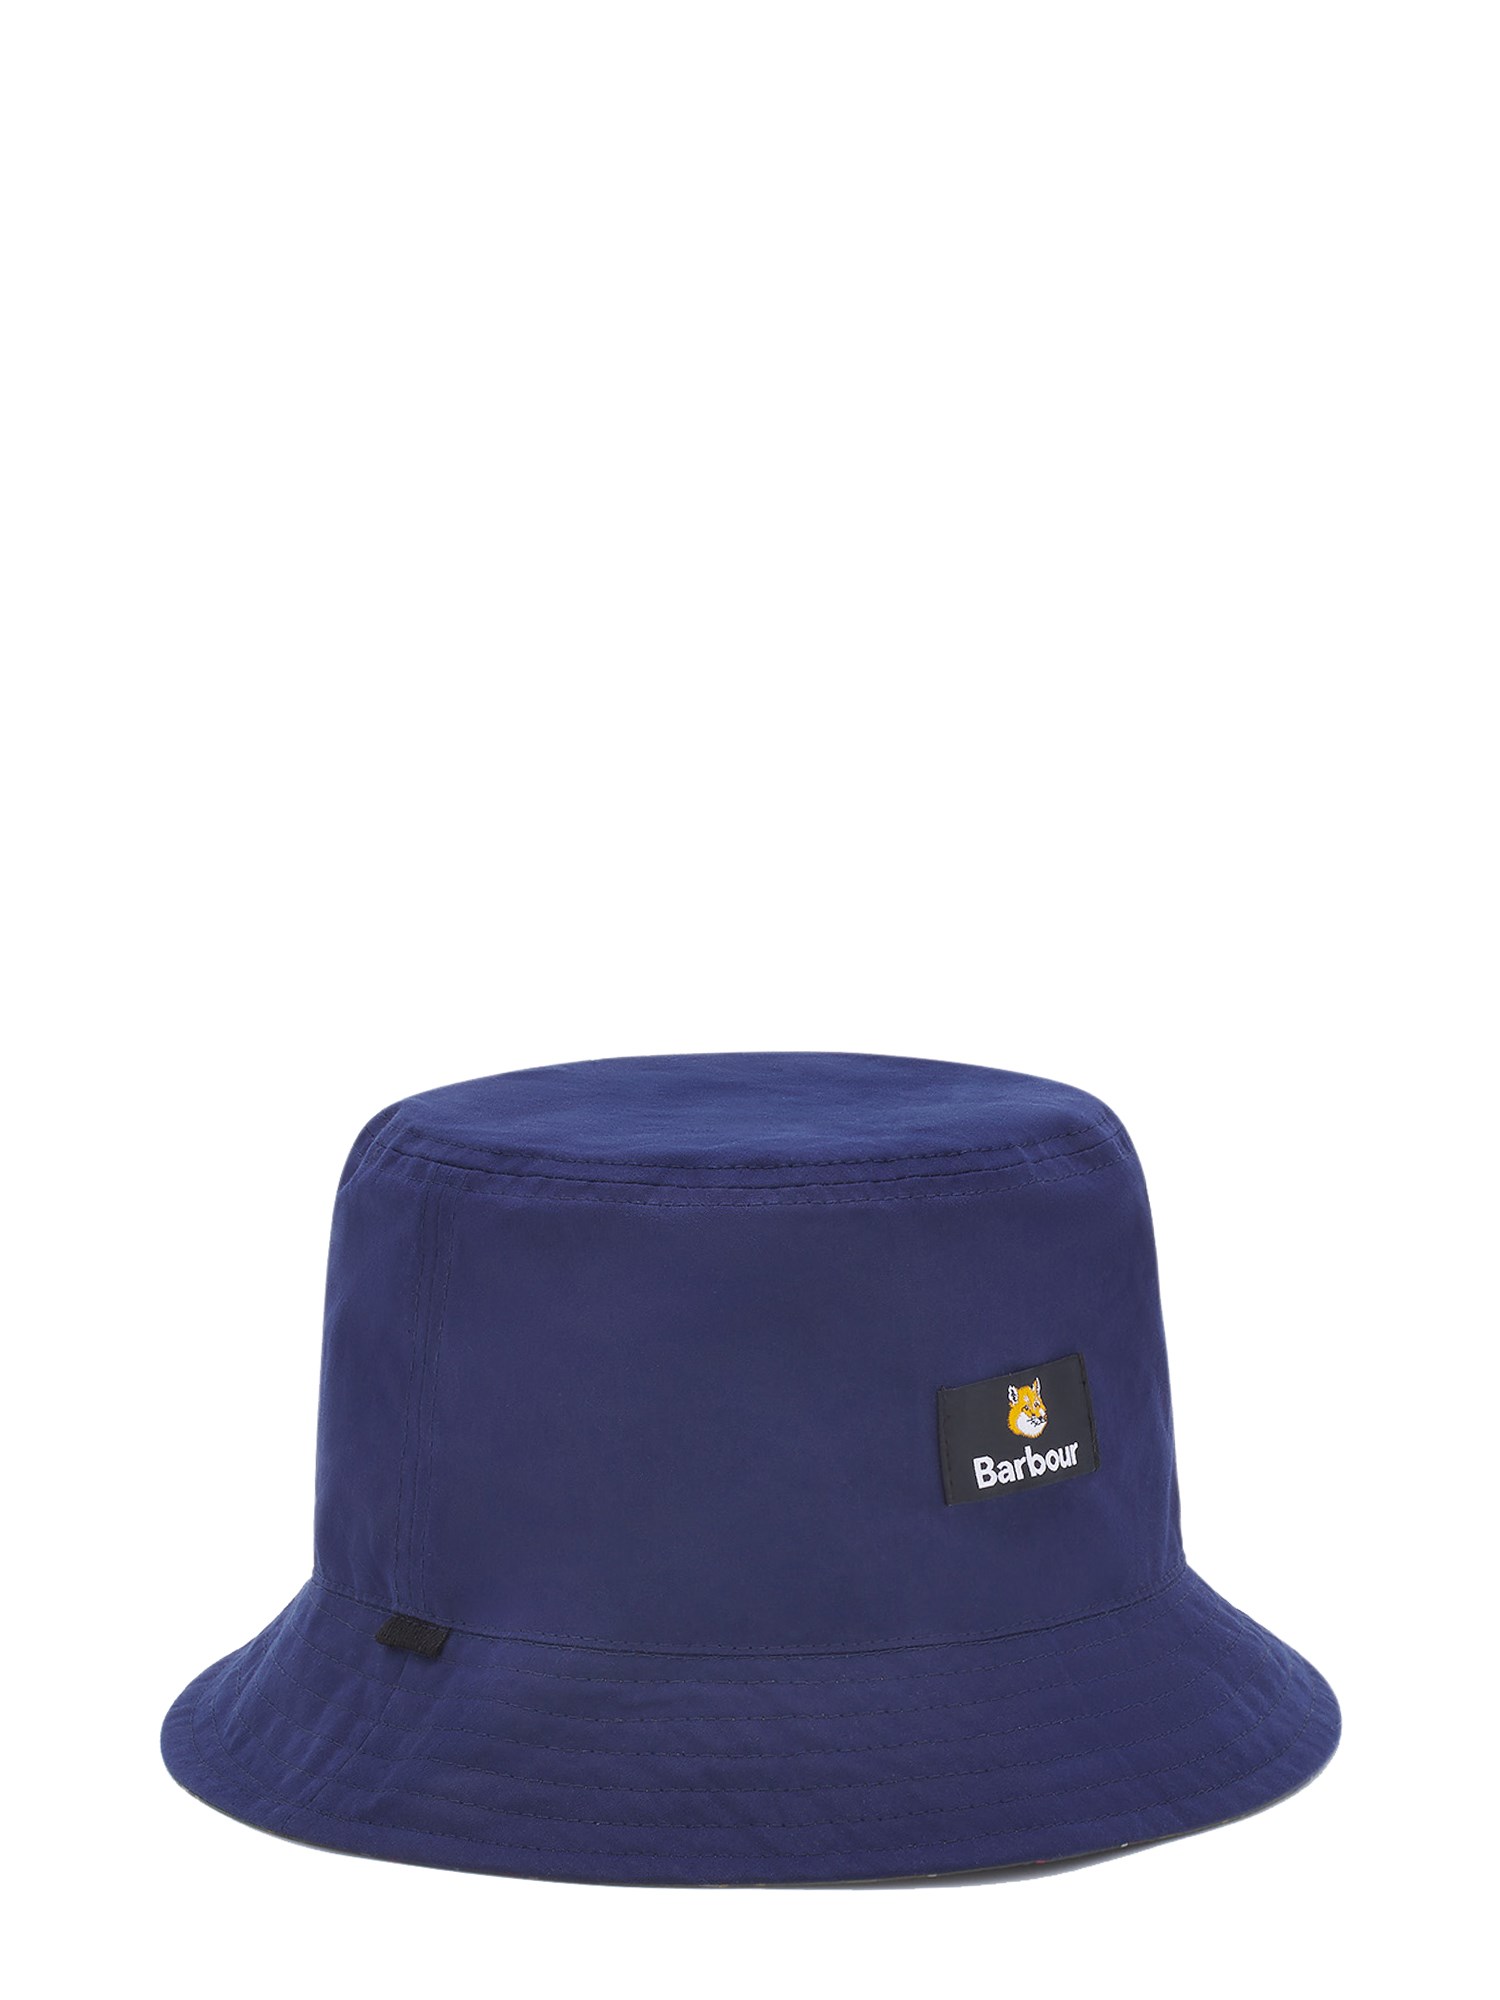 maison kitsuné x barbour reversible bucket hat